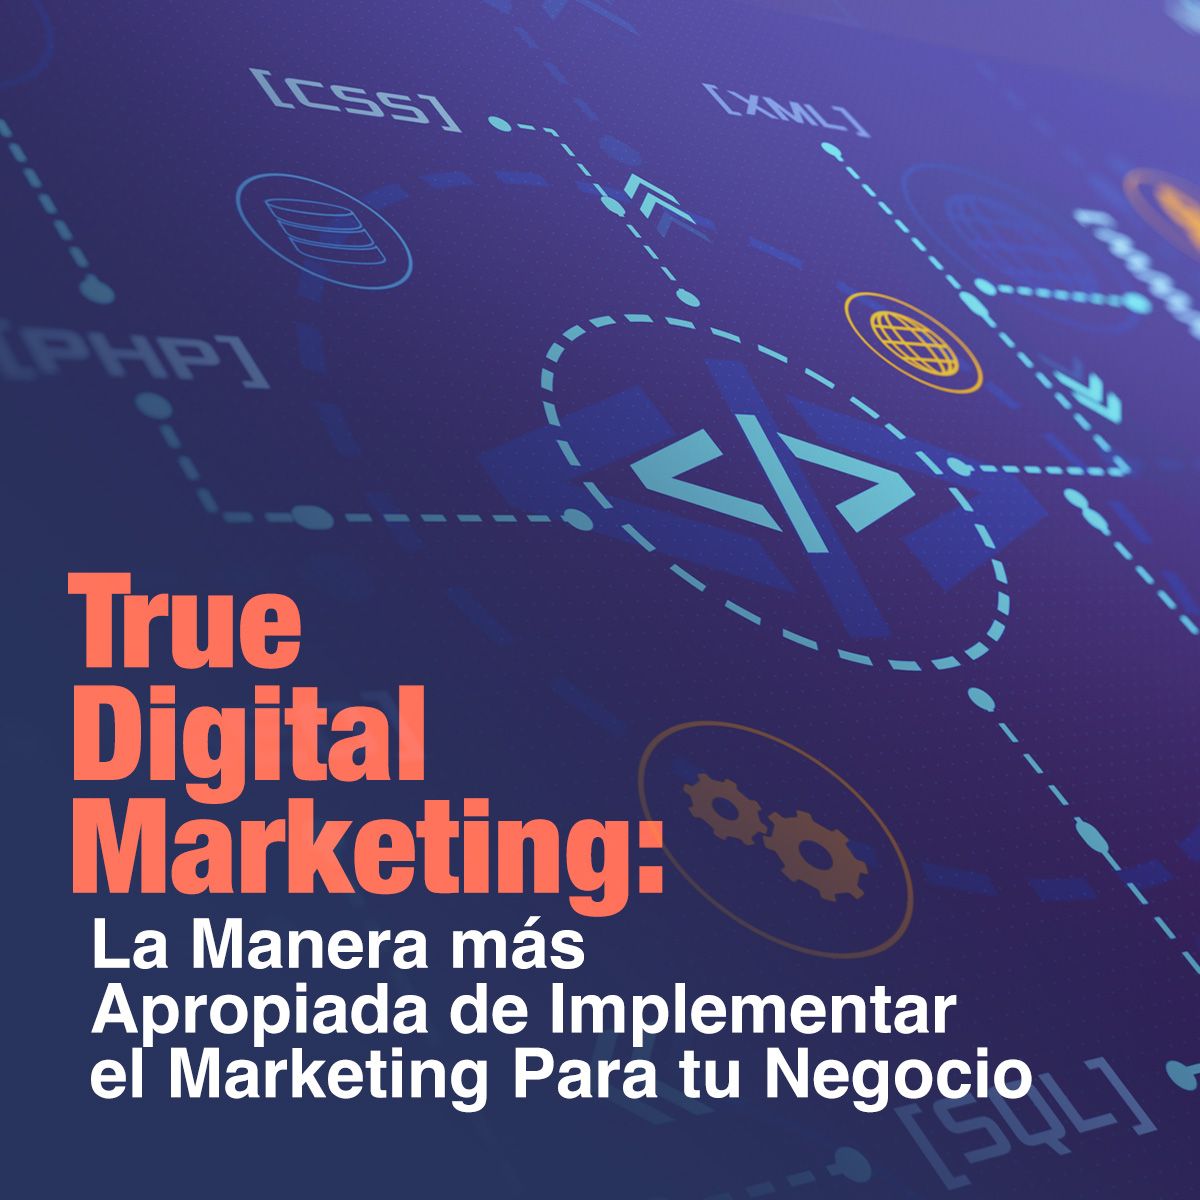 True Digital Marketing: La Manera más Apropiada de Implementar el Marketing Para tu Negocio